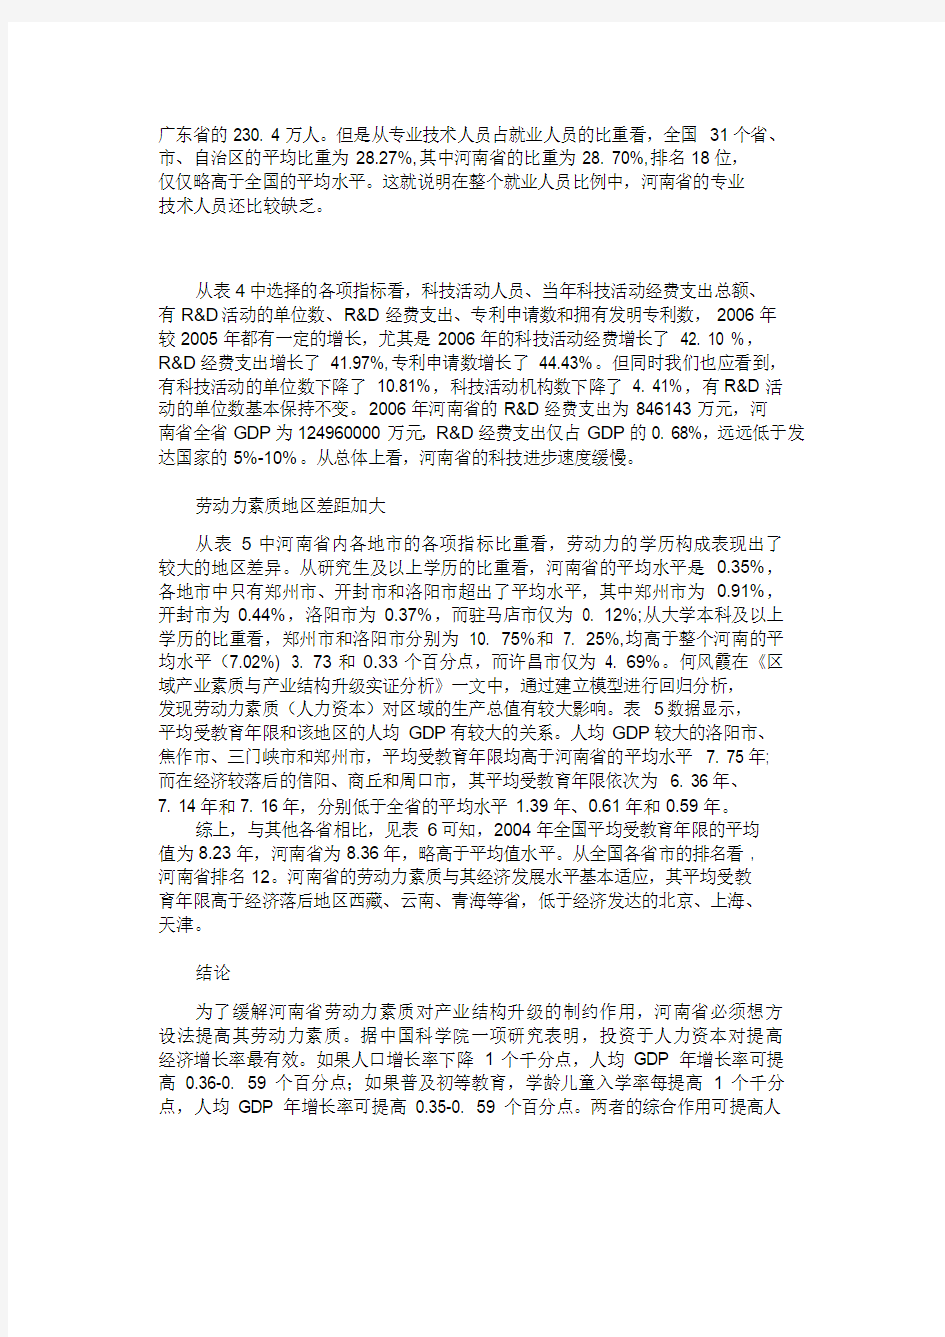 河南省劳动力素质发展状况研究-123